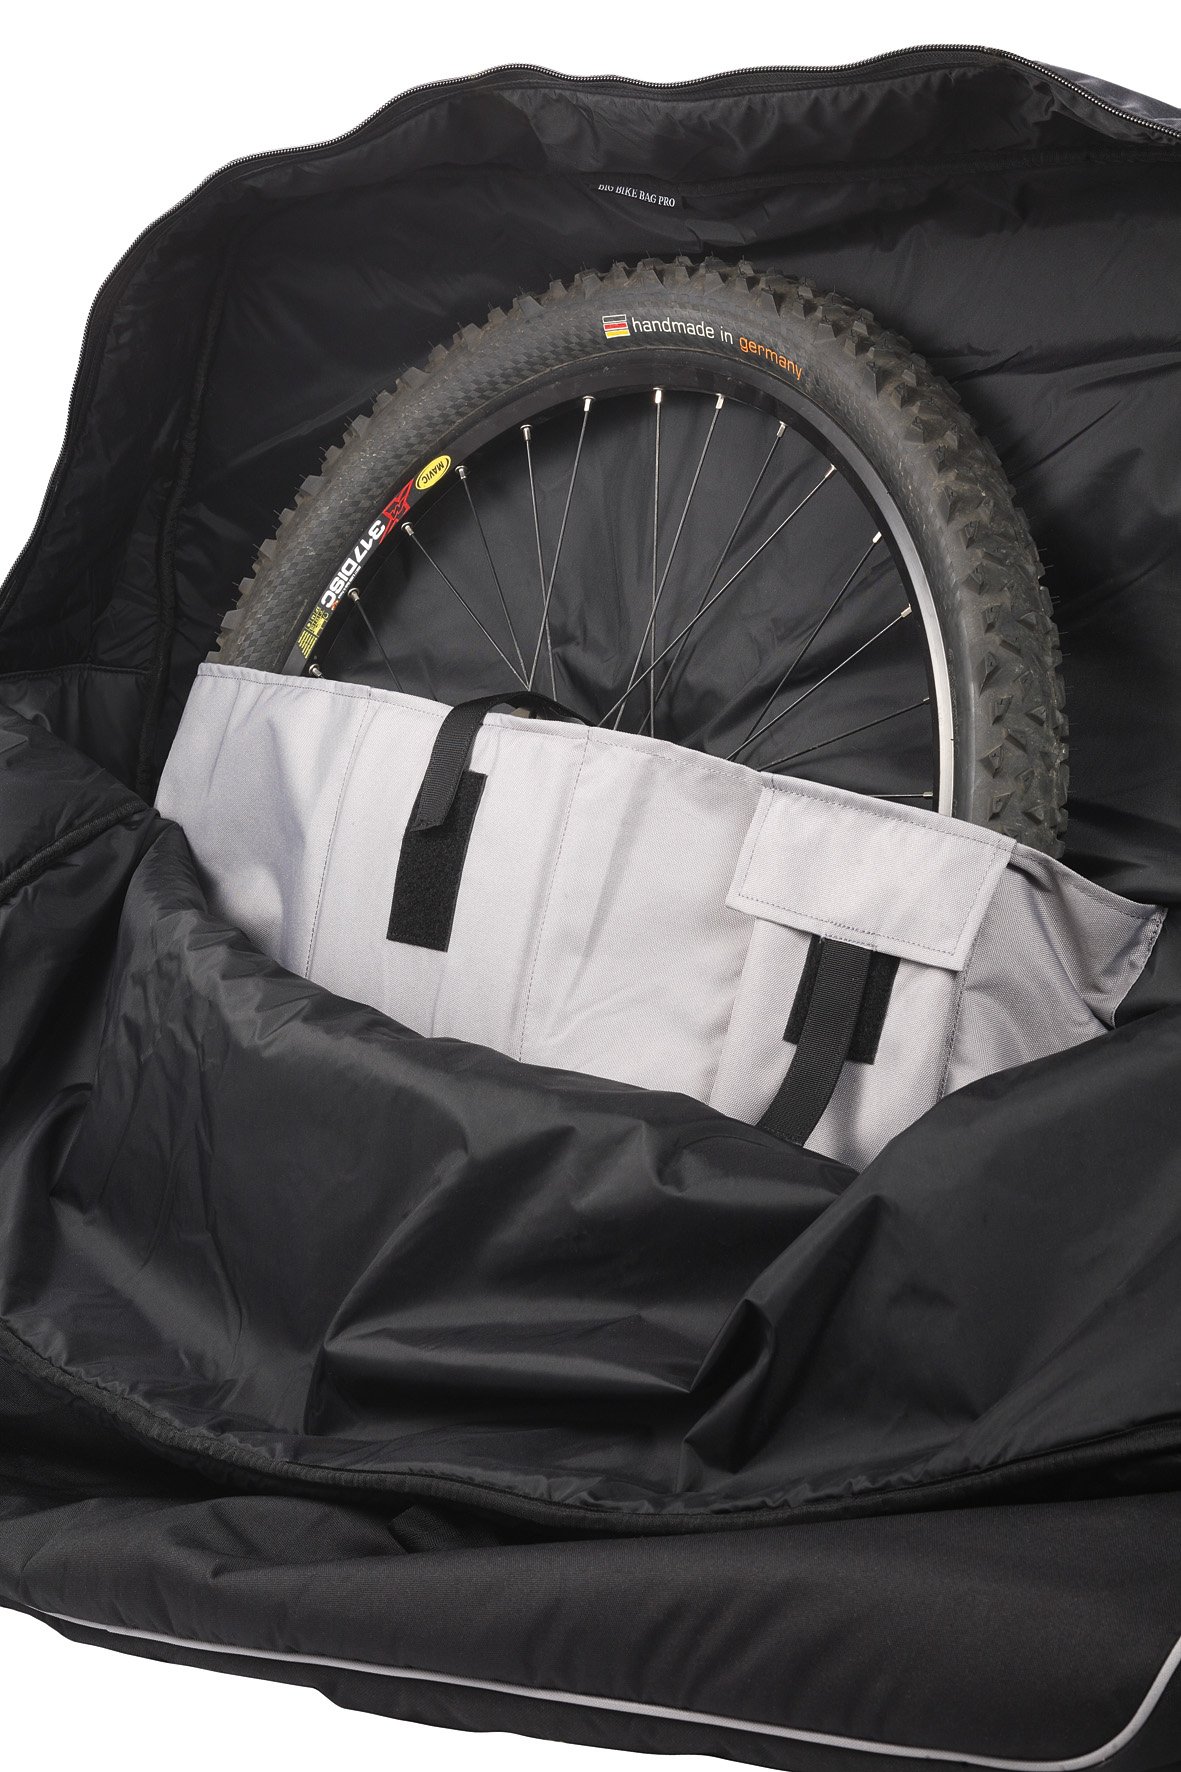 sommerfugl detail Efterforskning Vaude Big Bike Bag transporttaske til cykel - 1.049,00 : Cykelgear.dk -  Cykelgear.dk